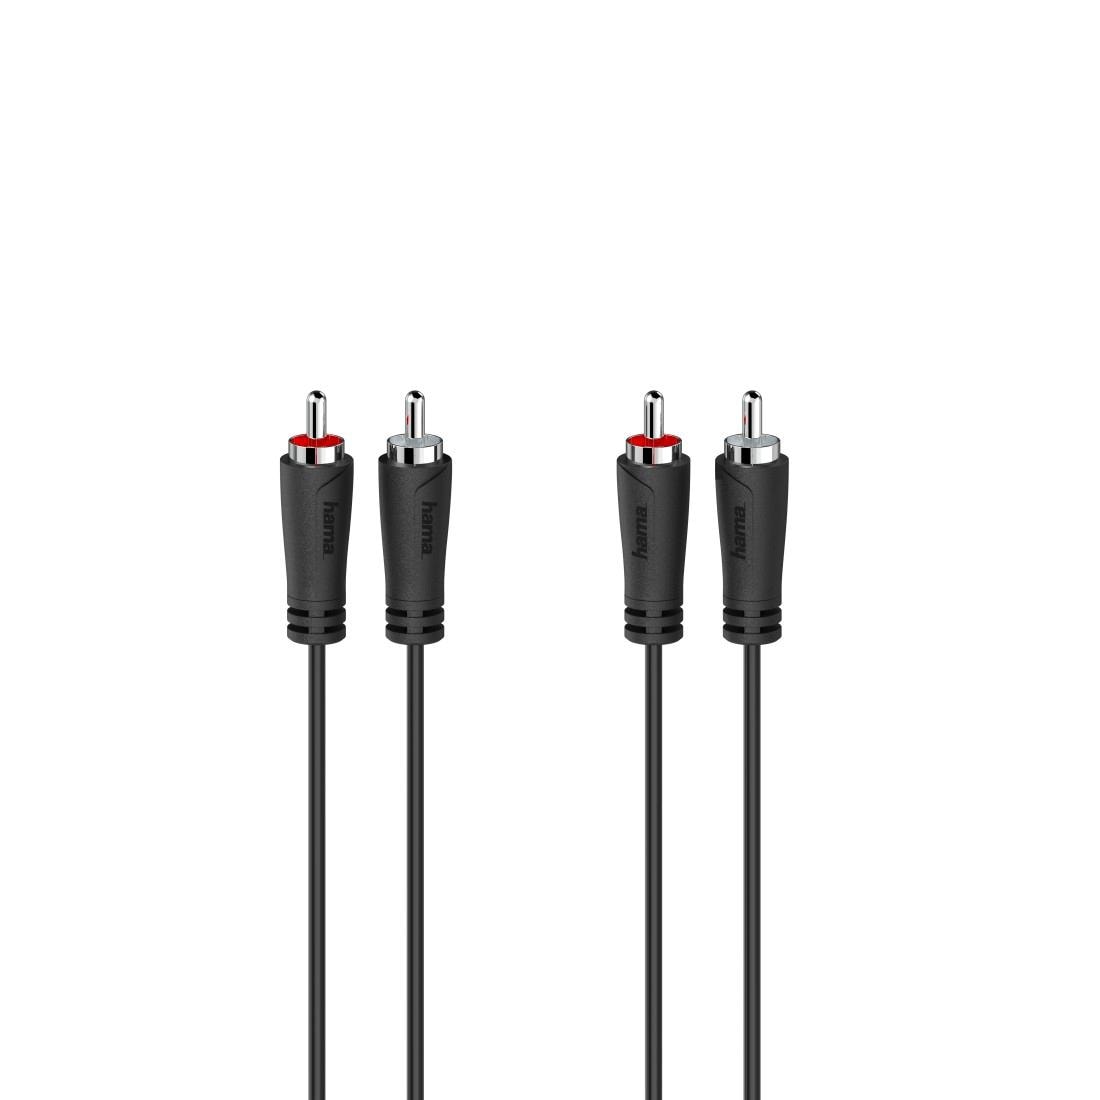 Hama Audio-Kabel »Audio Kabel, 2 Cinch Stecker, 2 Cinch Stecker, 5,0 m«, Cinch, 50 cm